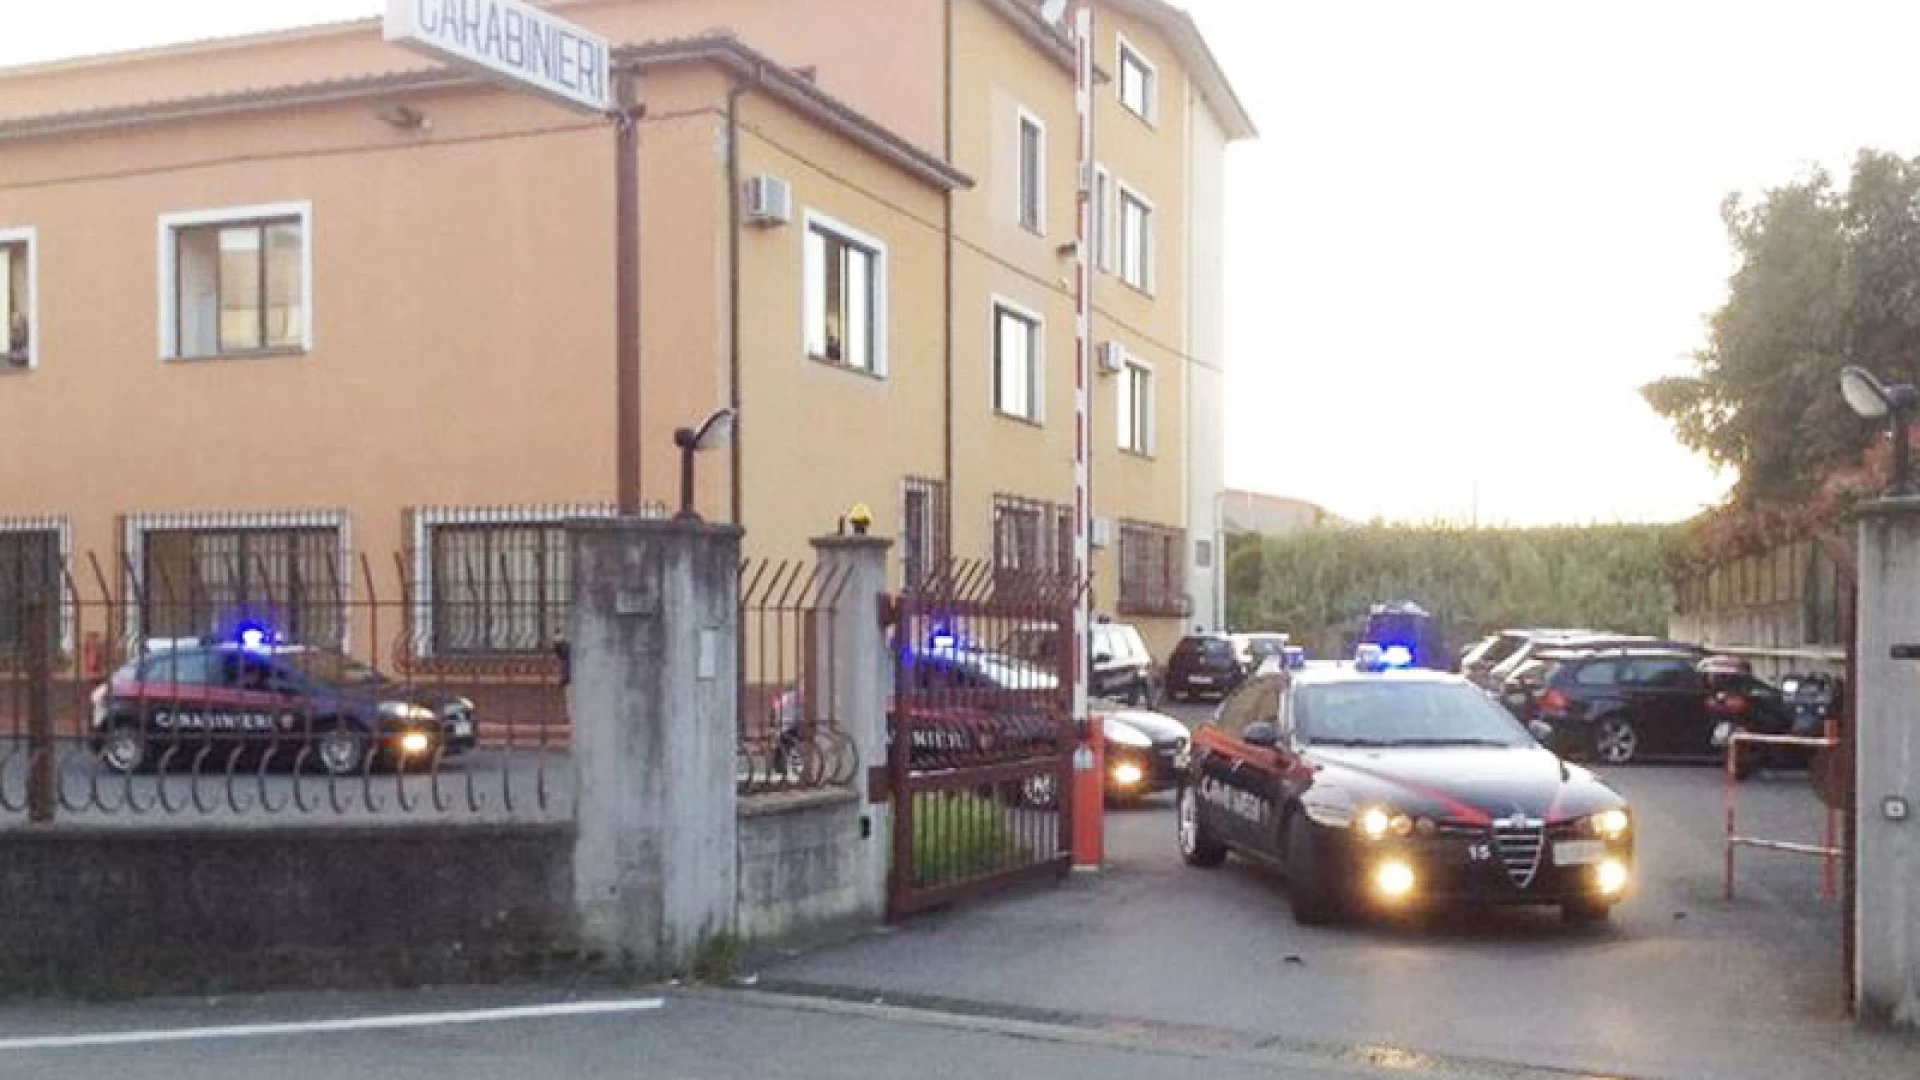 Venafro: una coppia del posto tratta in arresto per spaccio. L’operazione condotta dai Carabinieri.